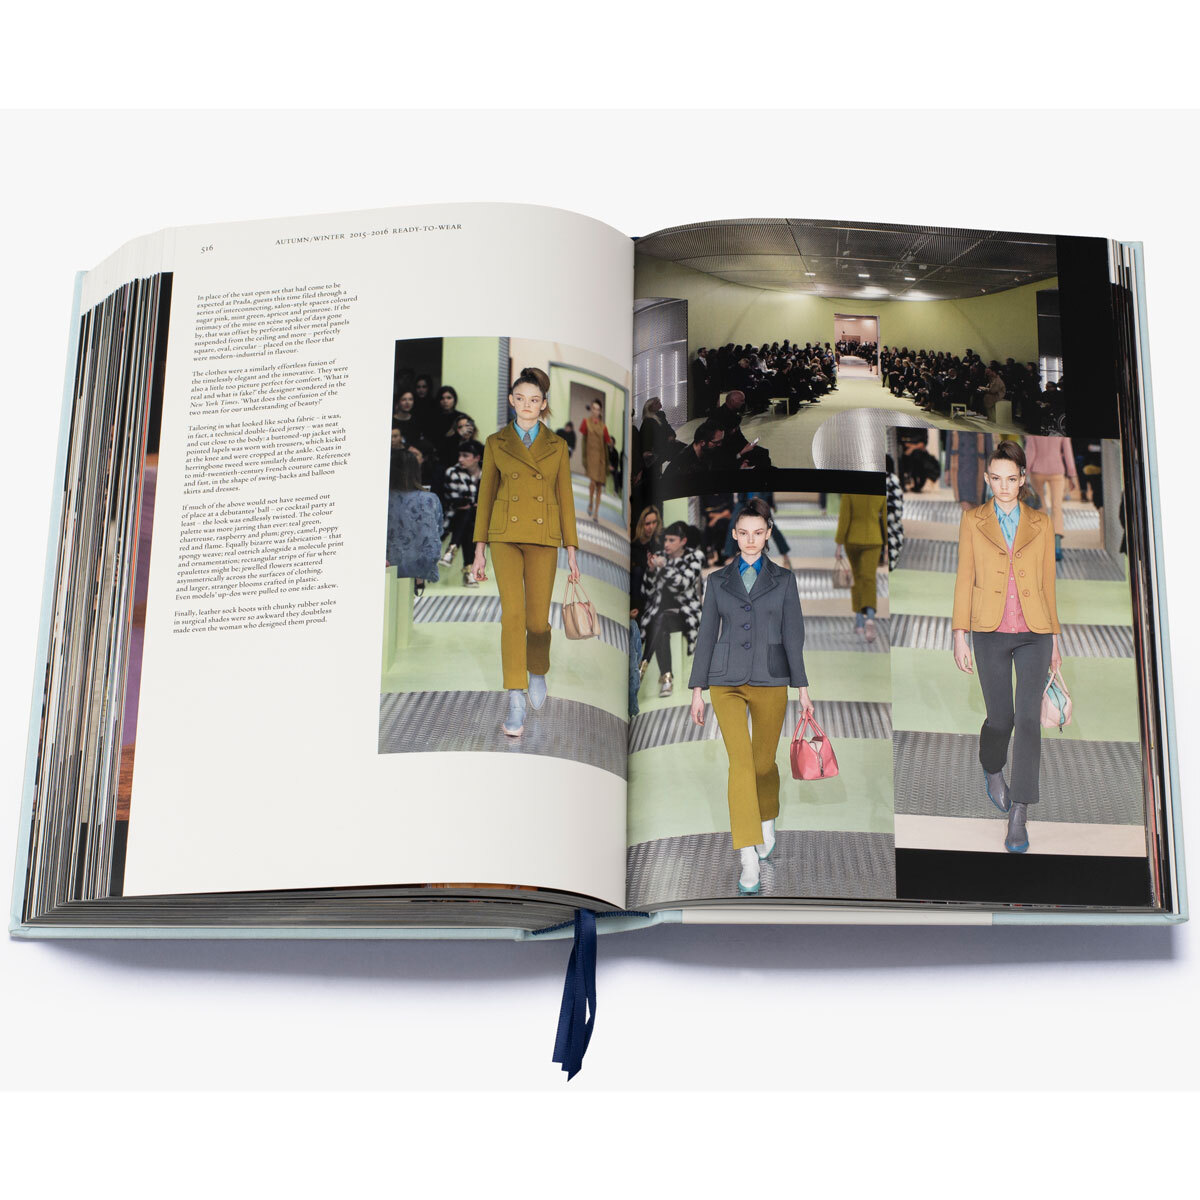 Prada Catwalk large Fashion Book – Abode